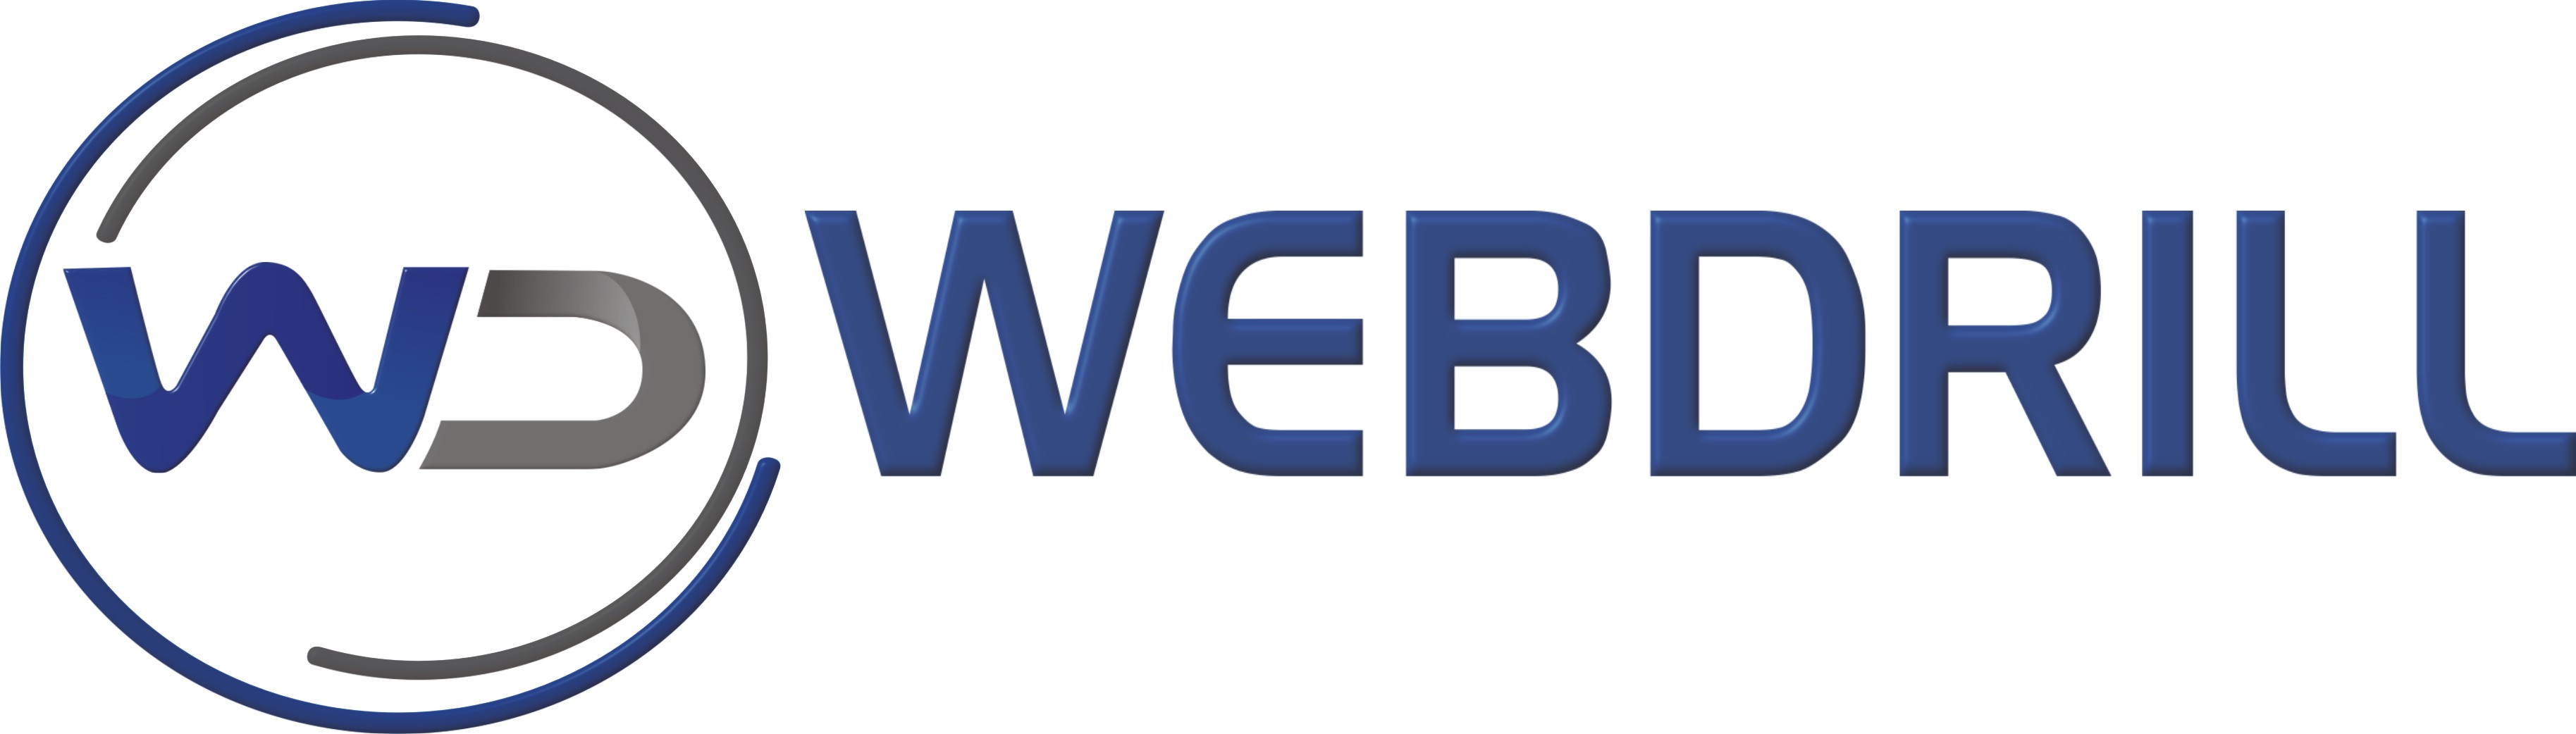 webdrill logo